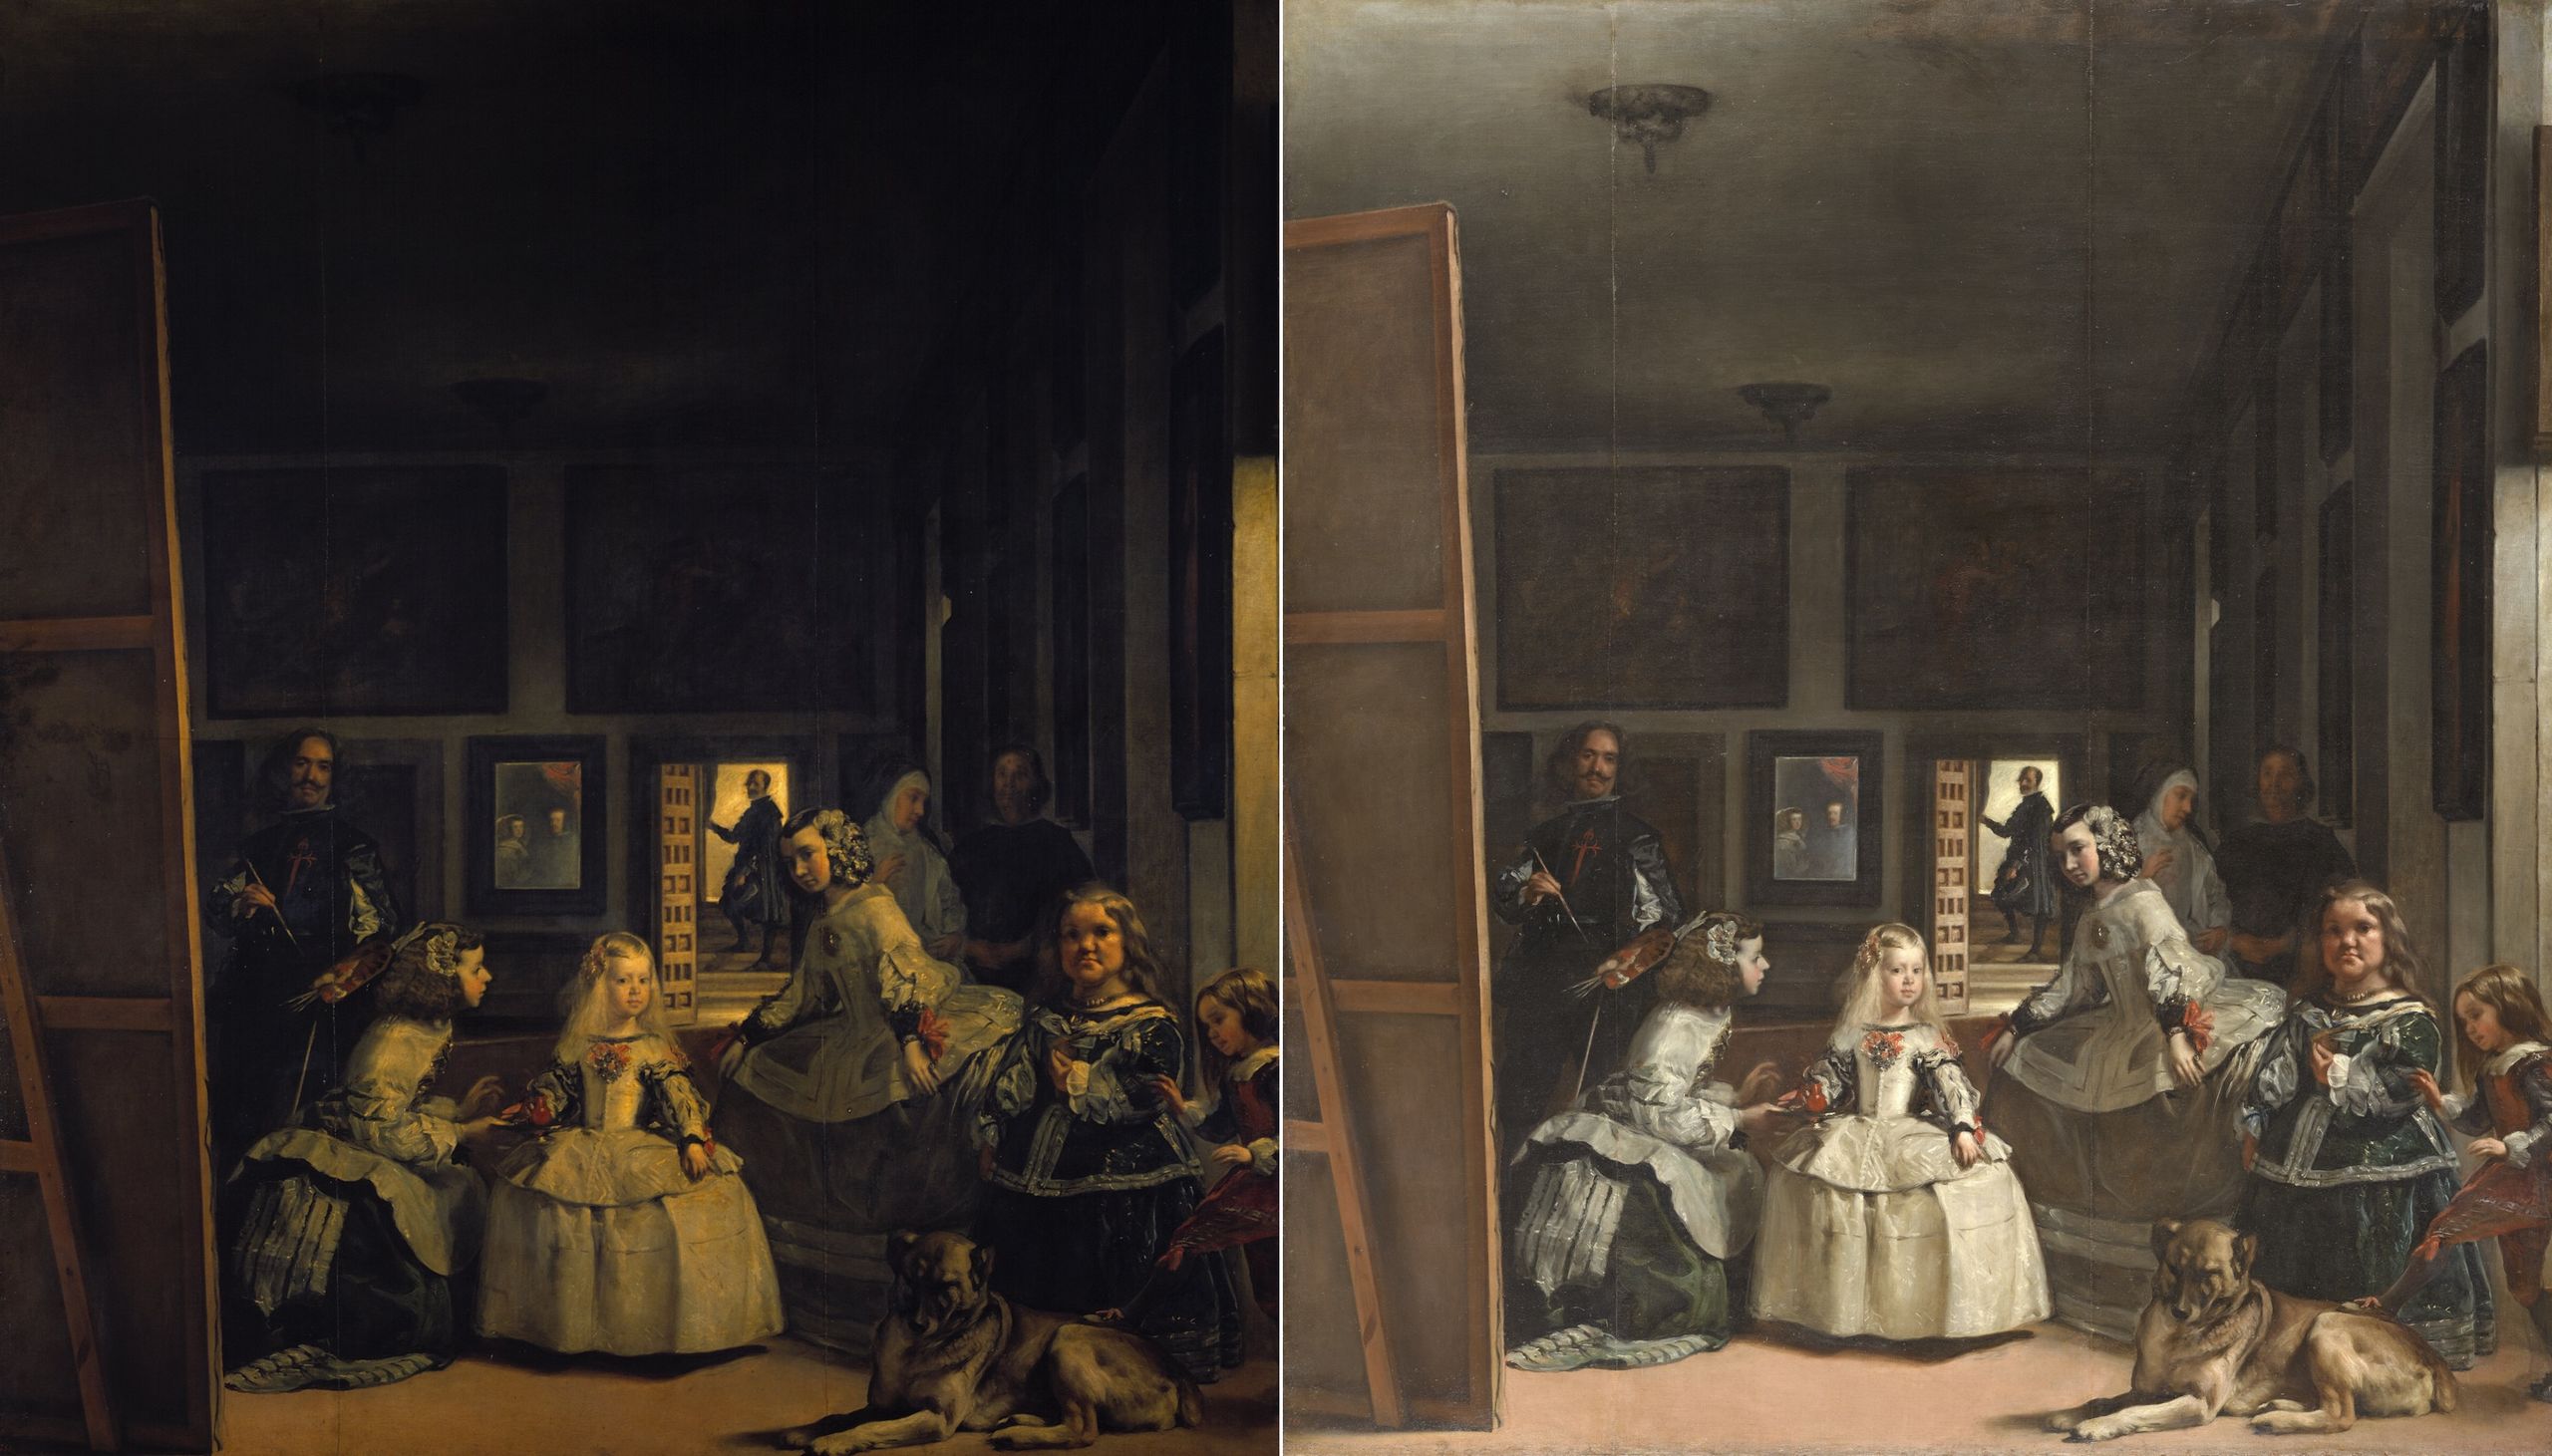 La trampa que creó Velázquez con 'Las Meninas': "Caemos todos"